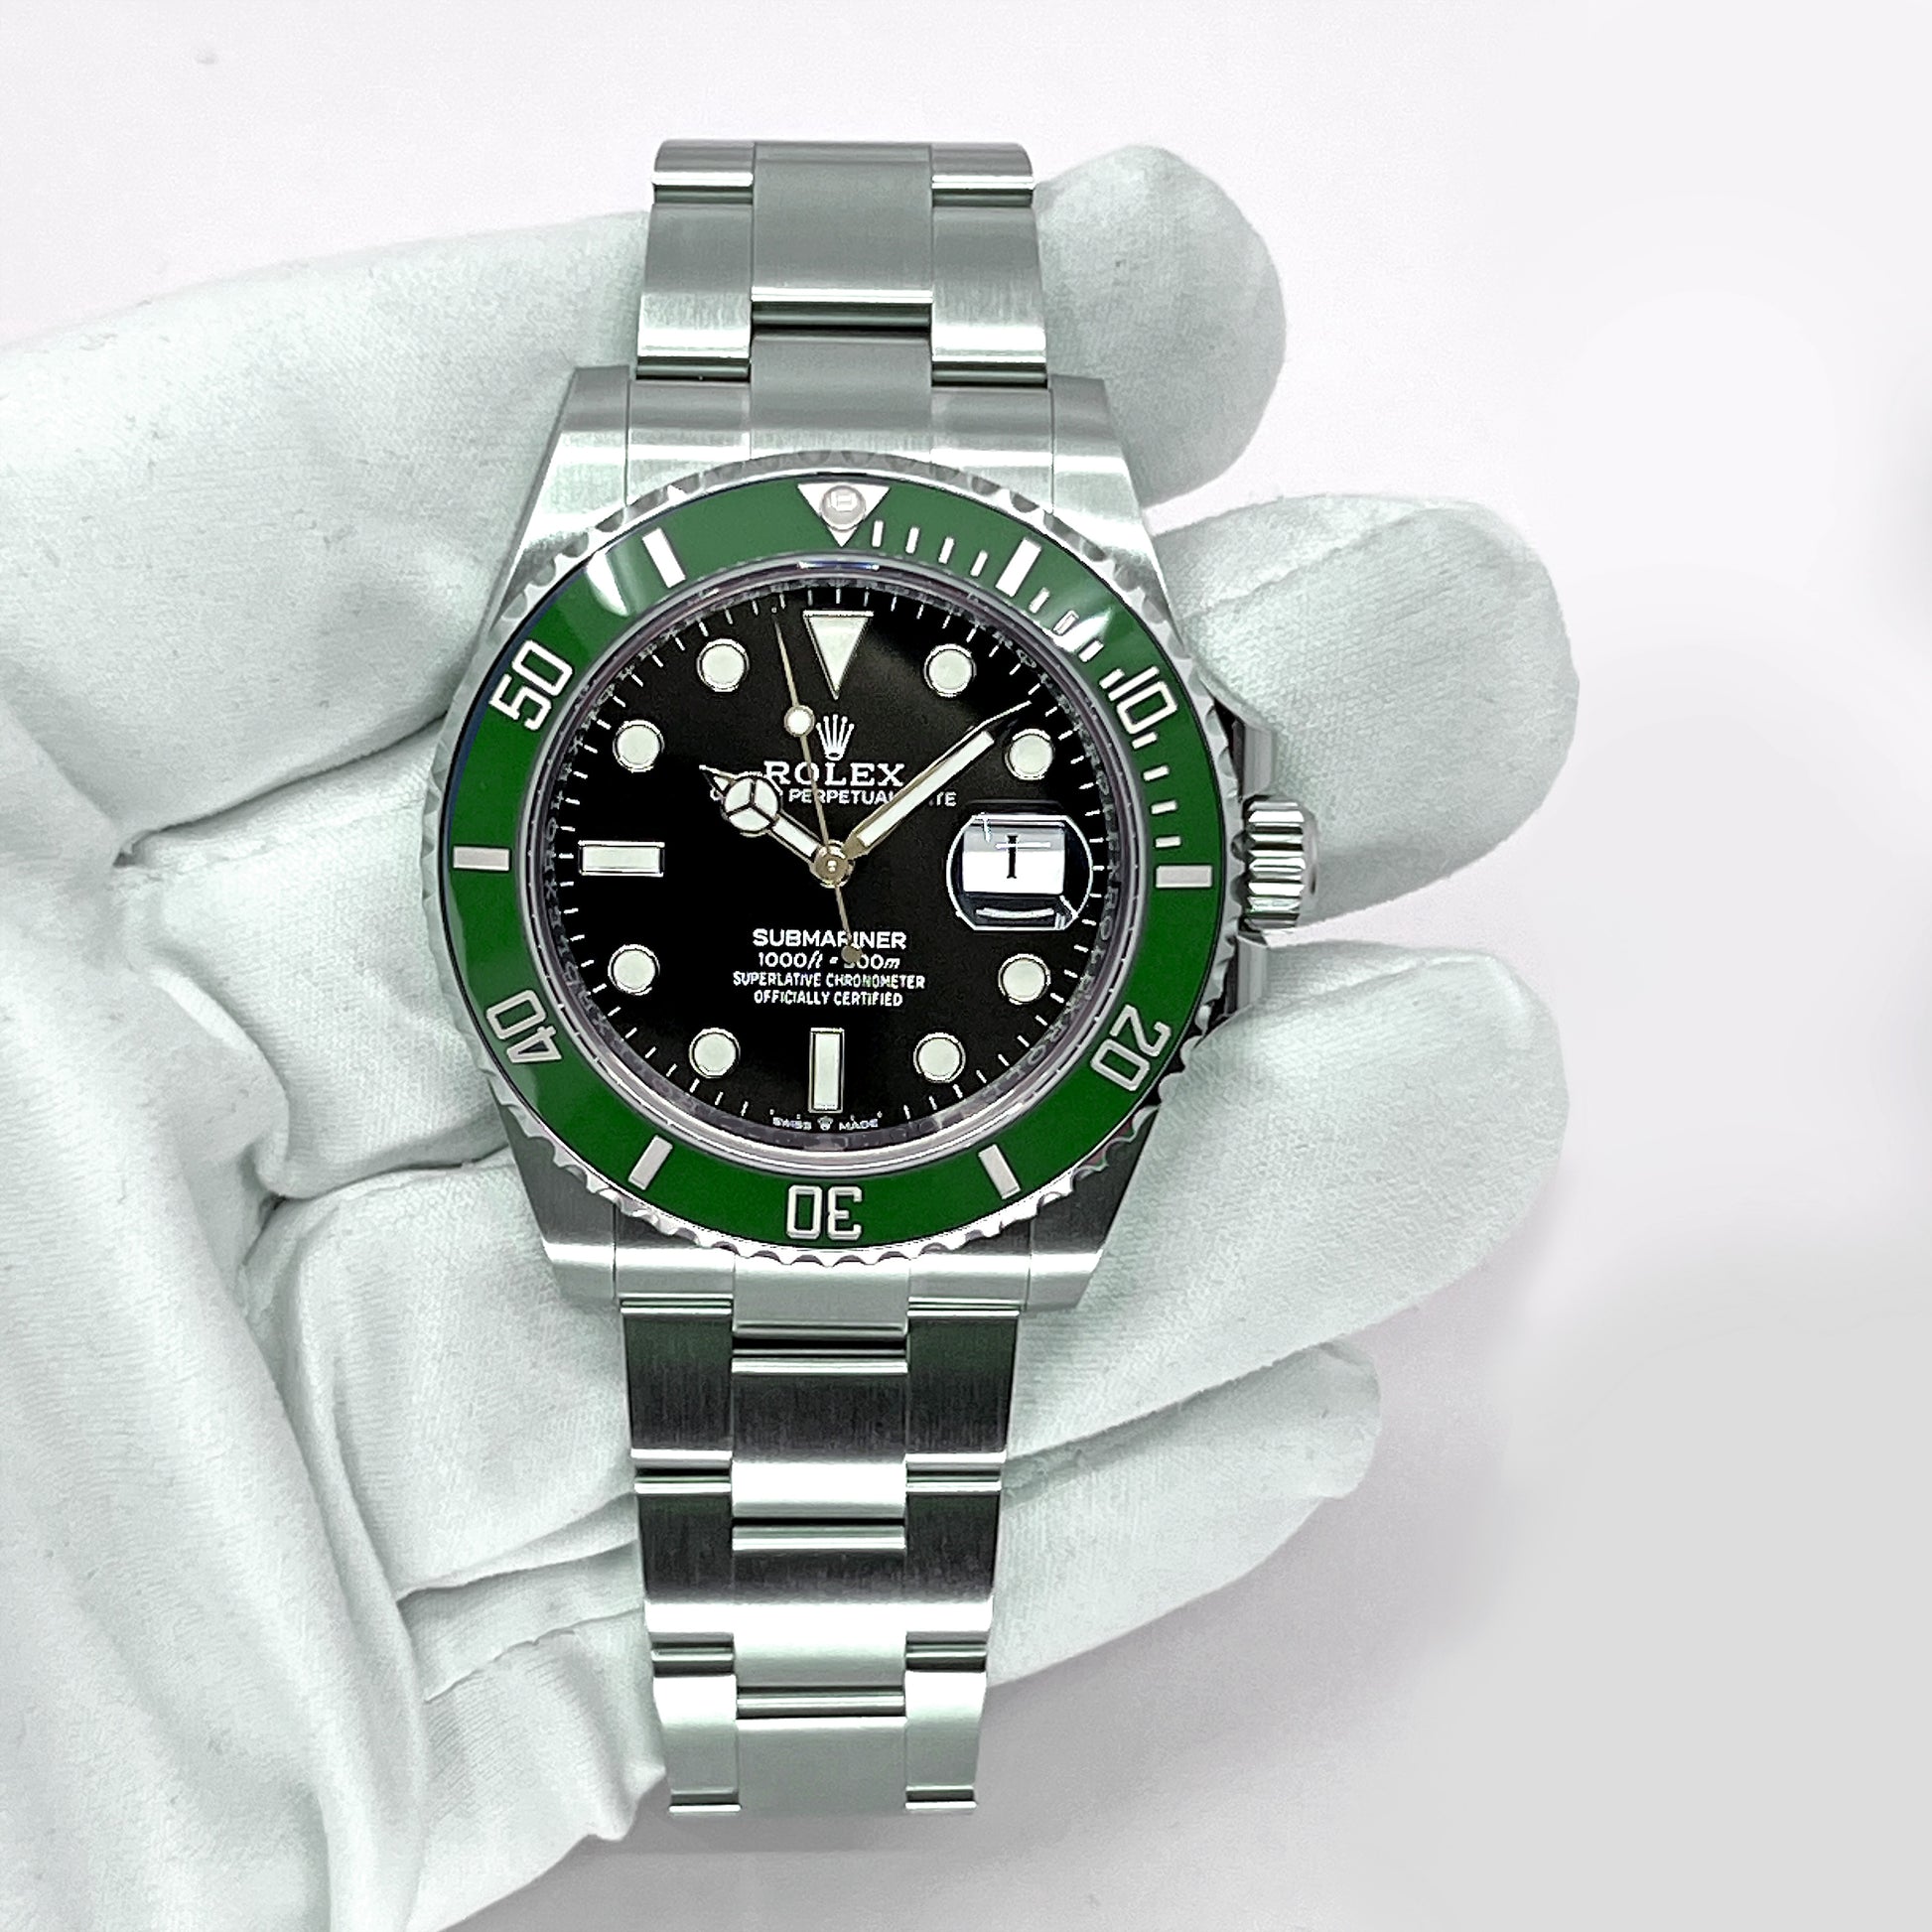 Rolex 126610LV Kermit Submariner Green Bezel Black Dial Stainless Steel Watch